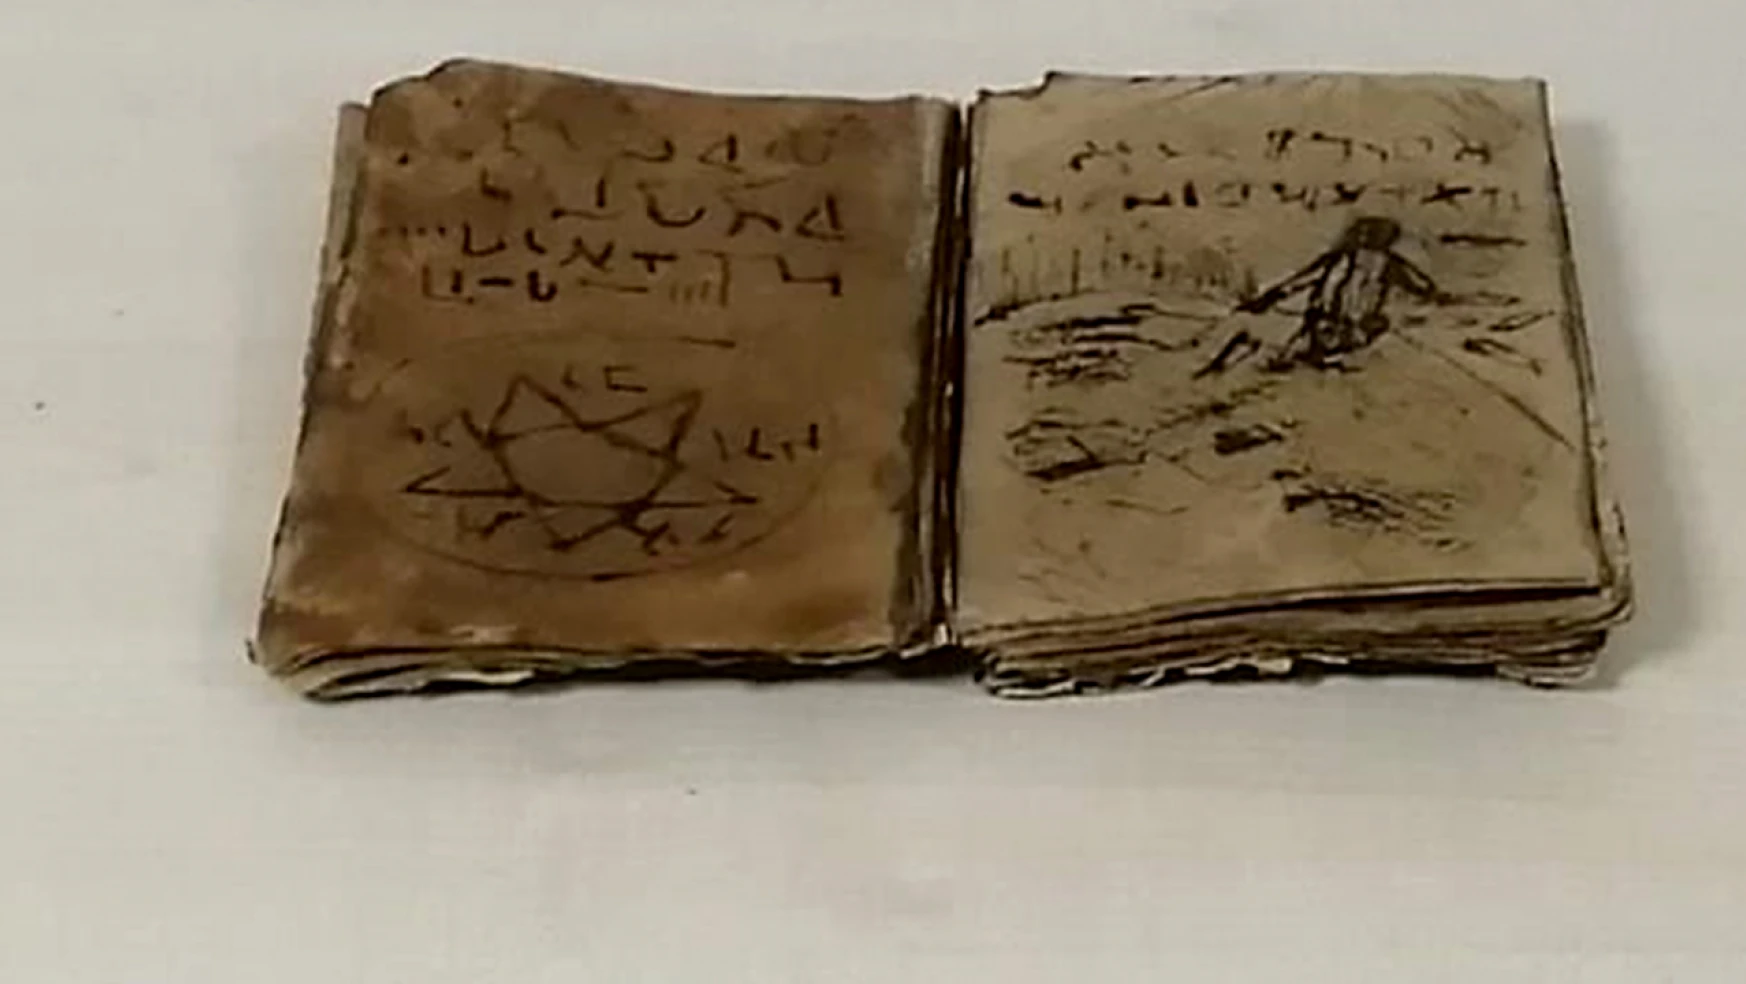 Elazığ'da Tarihi Olduğu Değerlendirilen Kitabı Satmak İsteyen Şüpheli Suçüstü Yakalandı